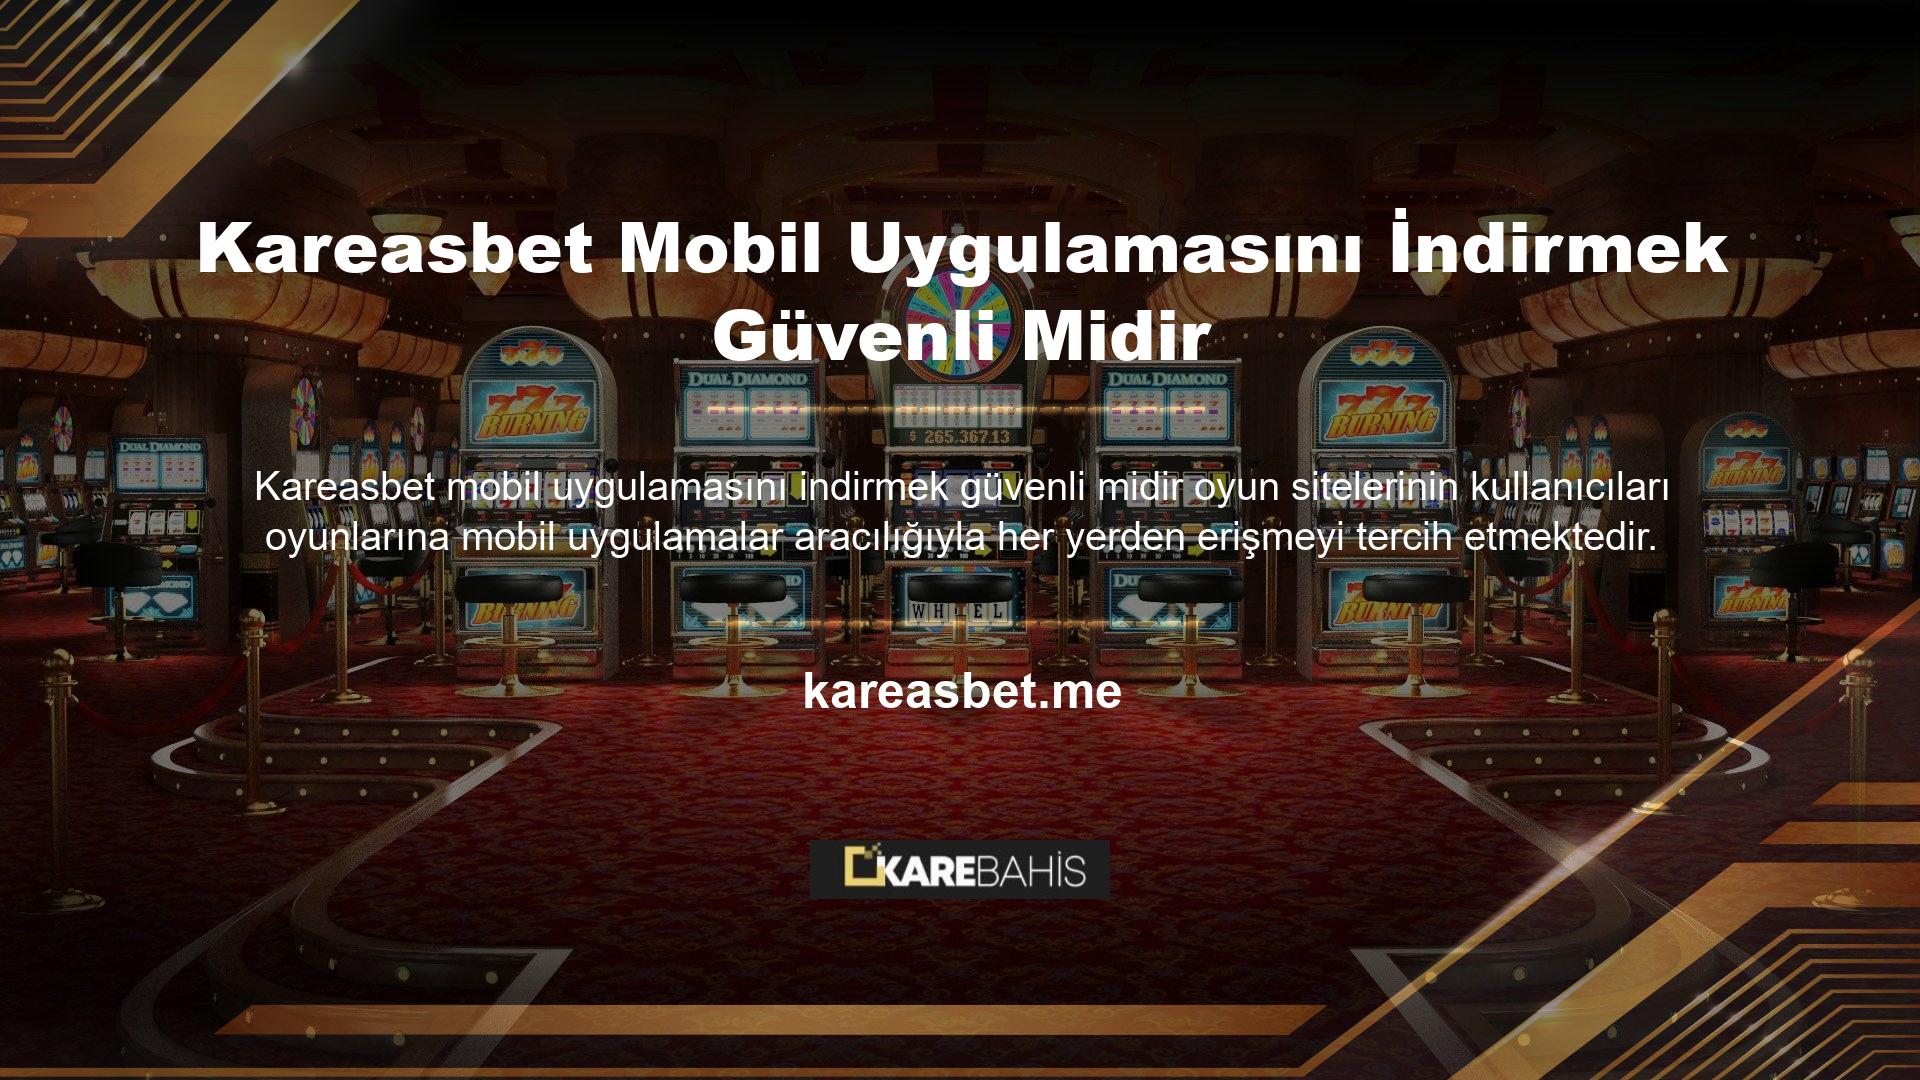 Kareasbet mobil uygulaması, oyuncuların dikkatini çeken kullanışlı bir arayüze ve profesyonel masaüstü bağlantısına sahiptir